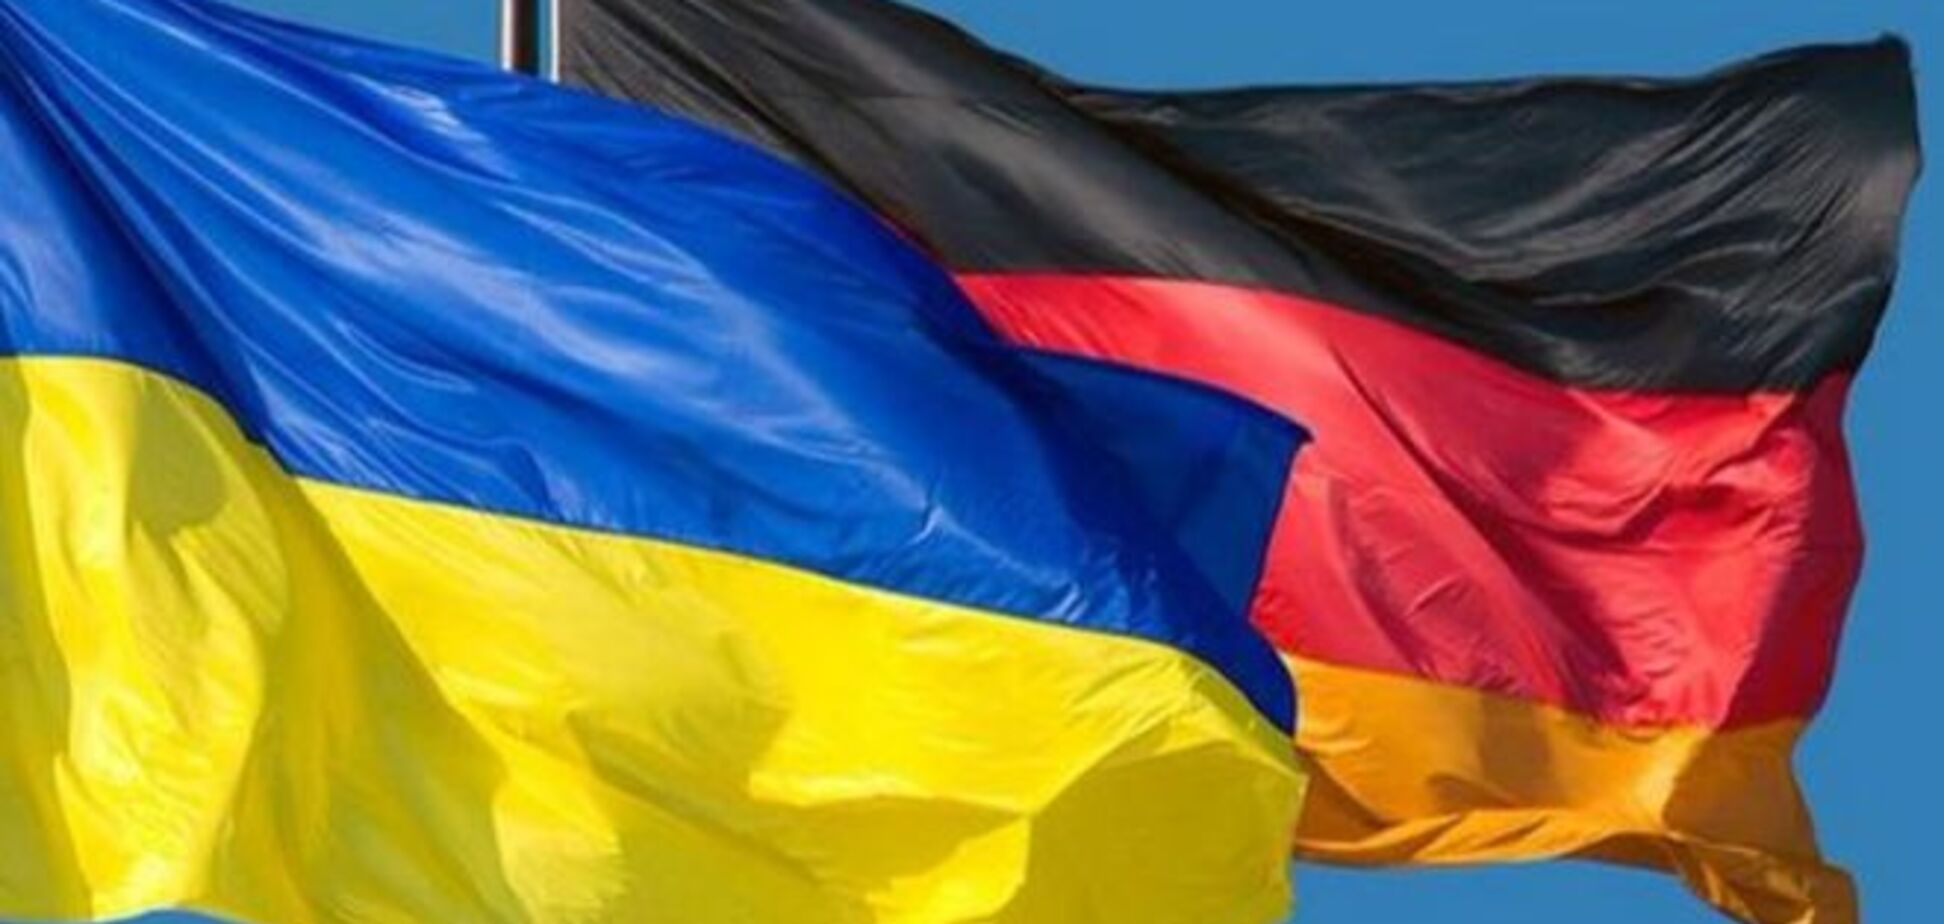 Германия ратифицировала Соглашение об ассоциации Украина-ЕС